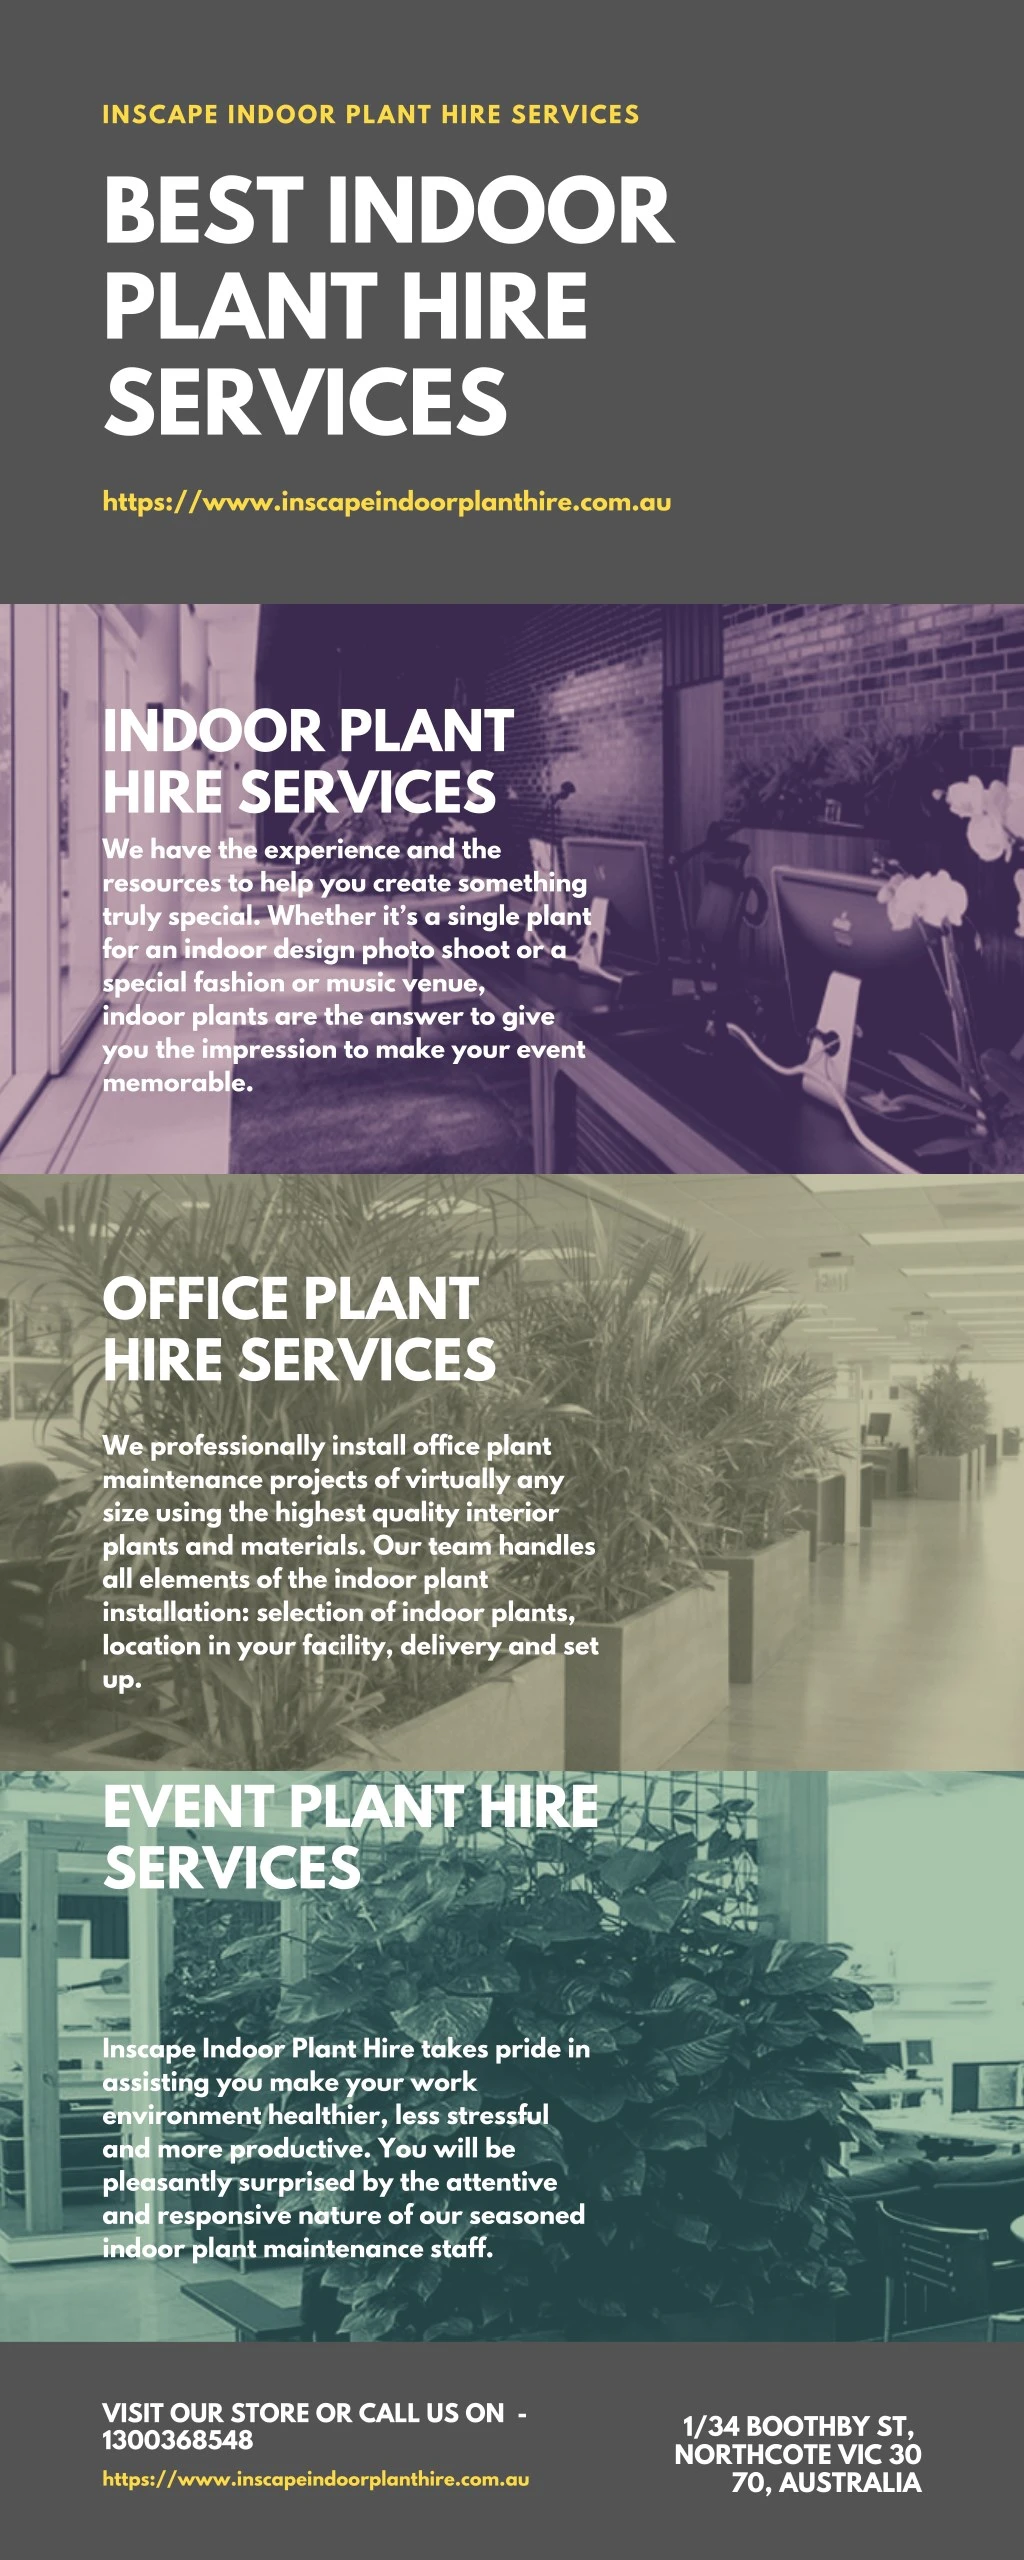 inscape indoor plant hire services best indoor